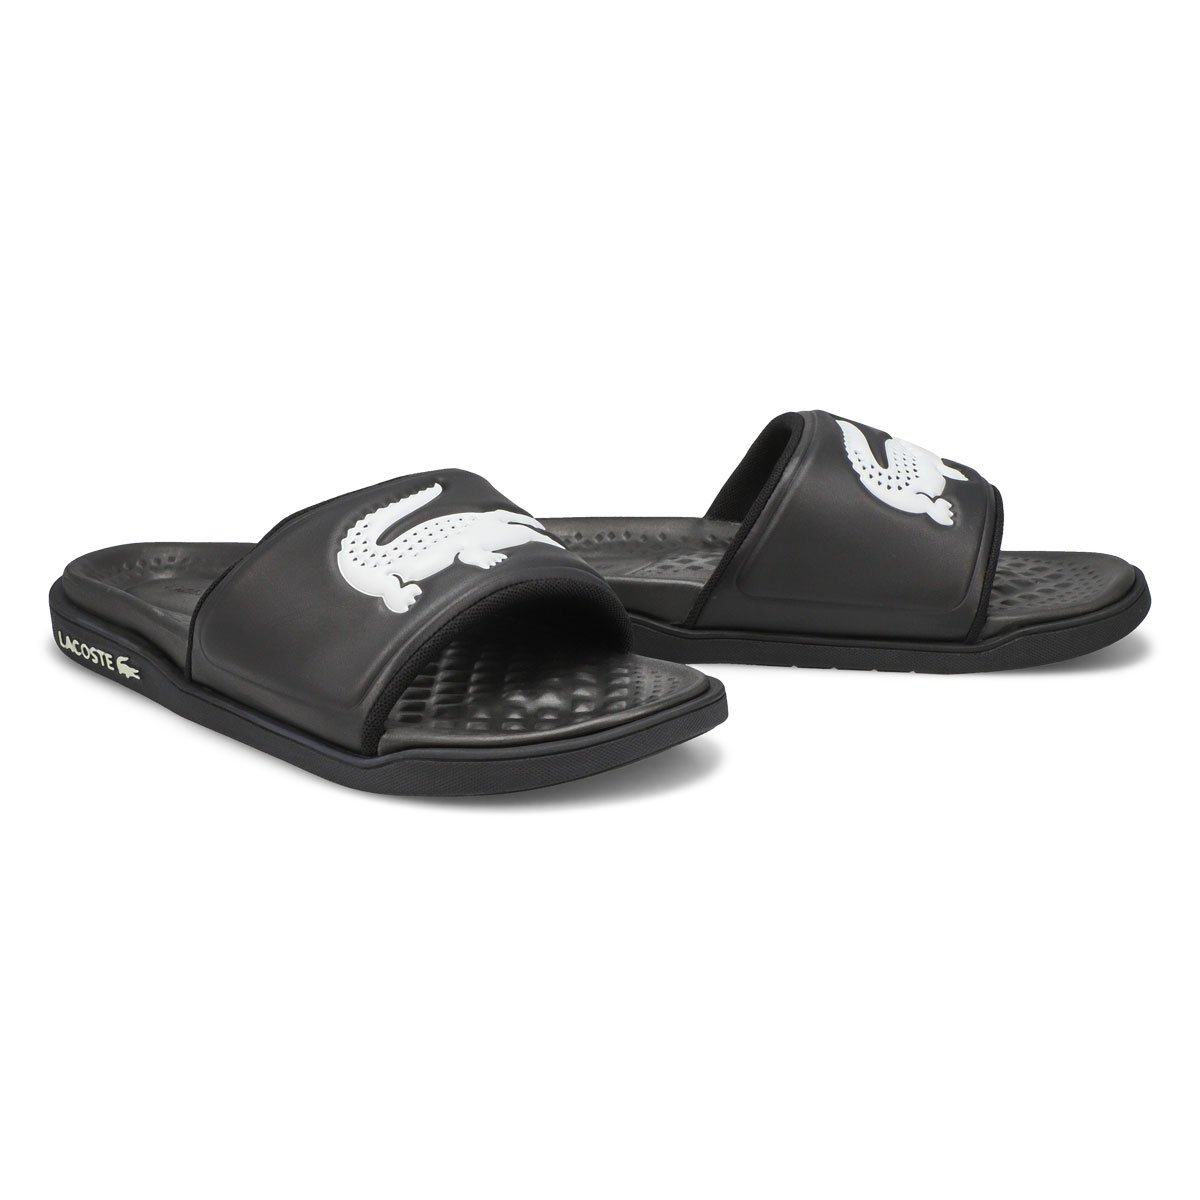 Men's Croco Dualiste Slide Sandal -Black/White